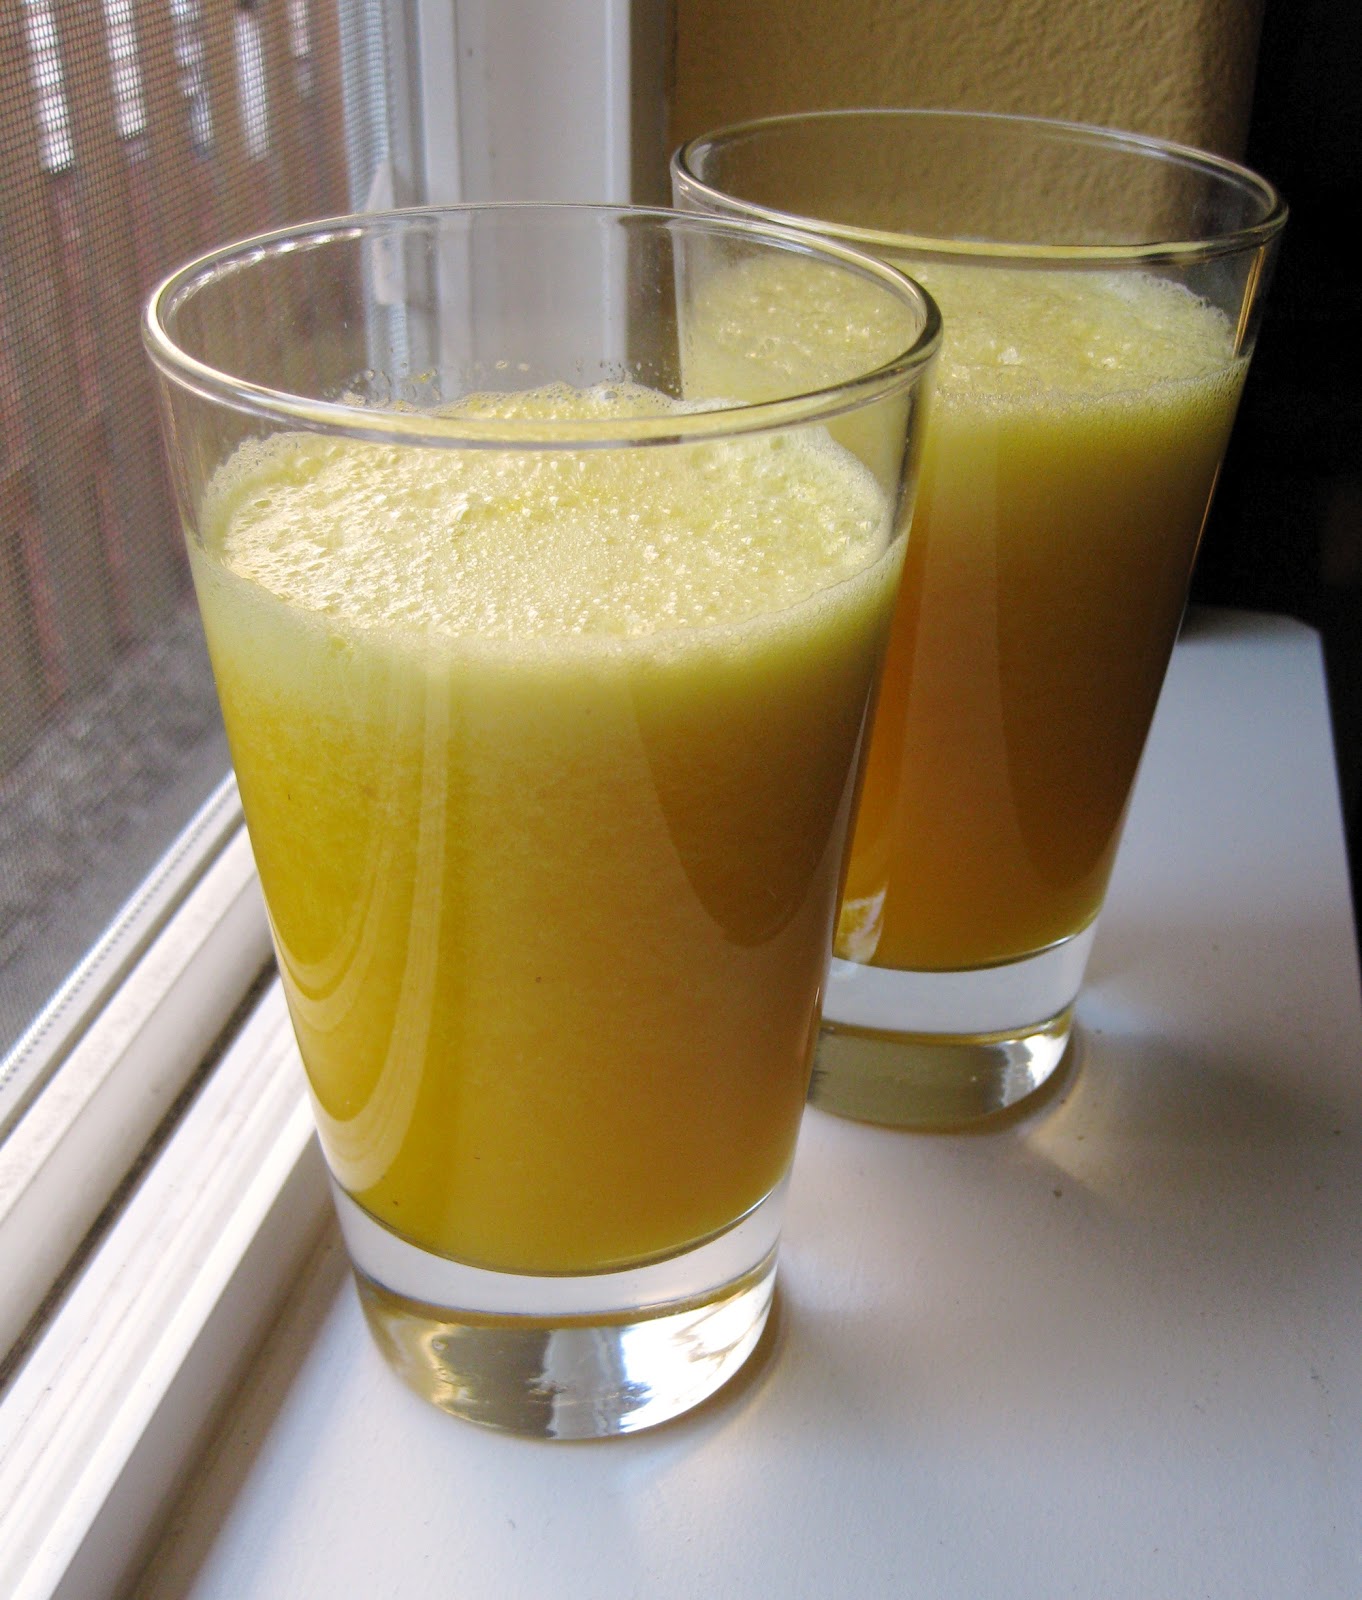 http://4.bp.blogspot.com/-XTc2Ud-EqAE/T_nwP336CXI/AAAAAAAAC84/0iaQjIZ8Ud0/s1600/blender+orange+juice.jpg